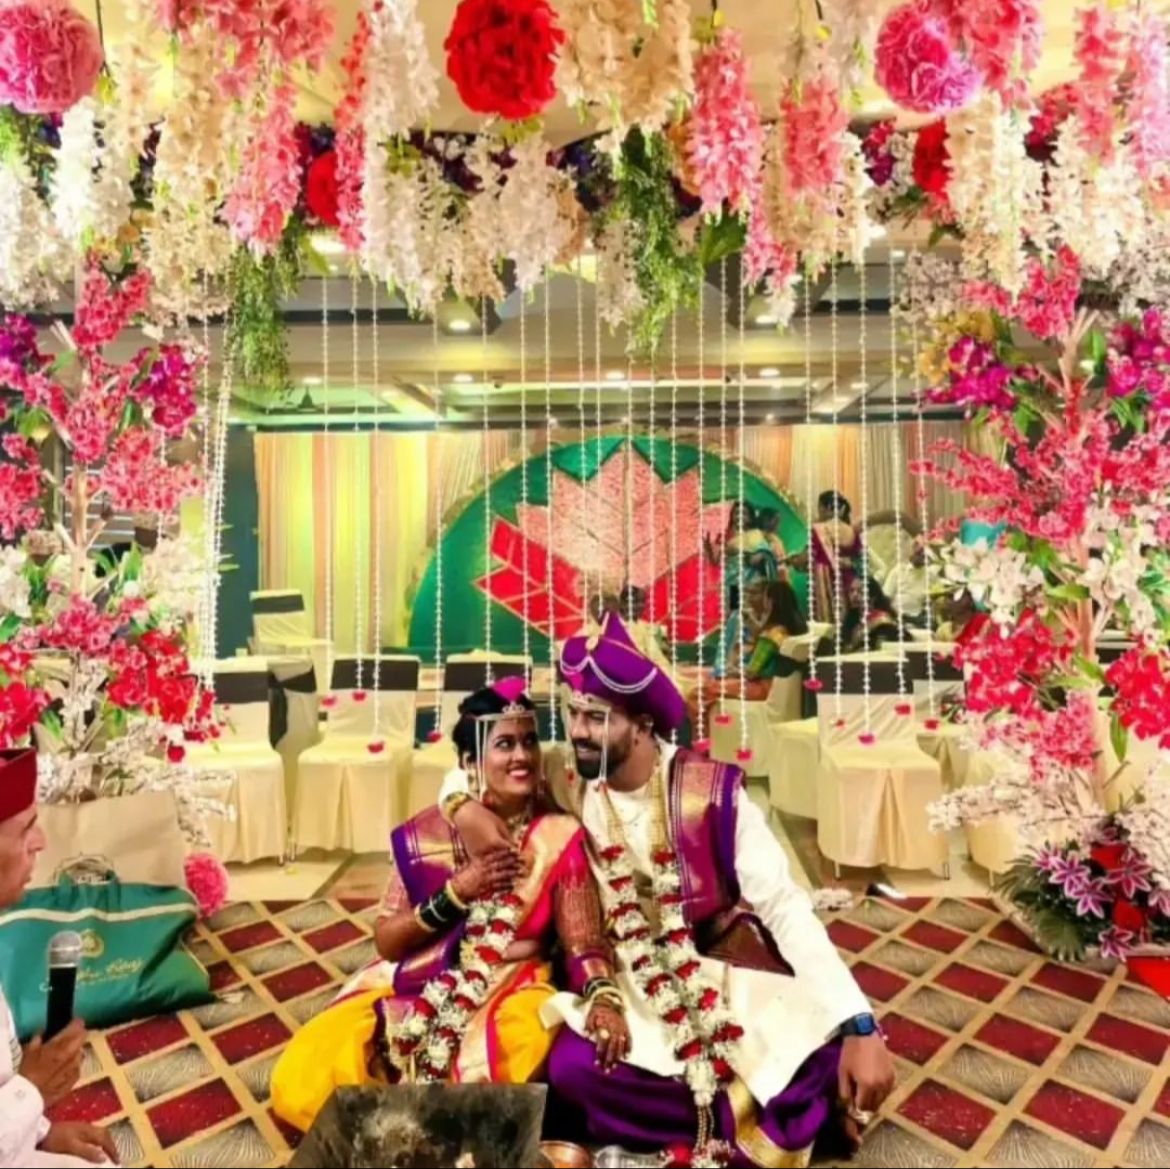 Sayli Kamble Dons A Nauvari Saree At Her Wedding With BF Dhawal, Their  'Varmala' Moment Wins Hearts